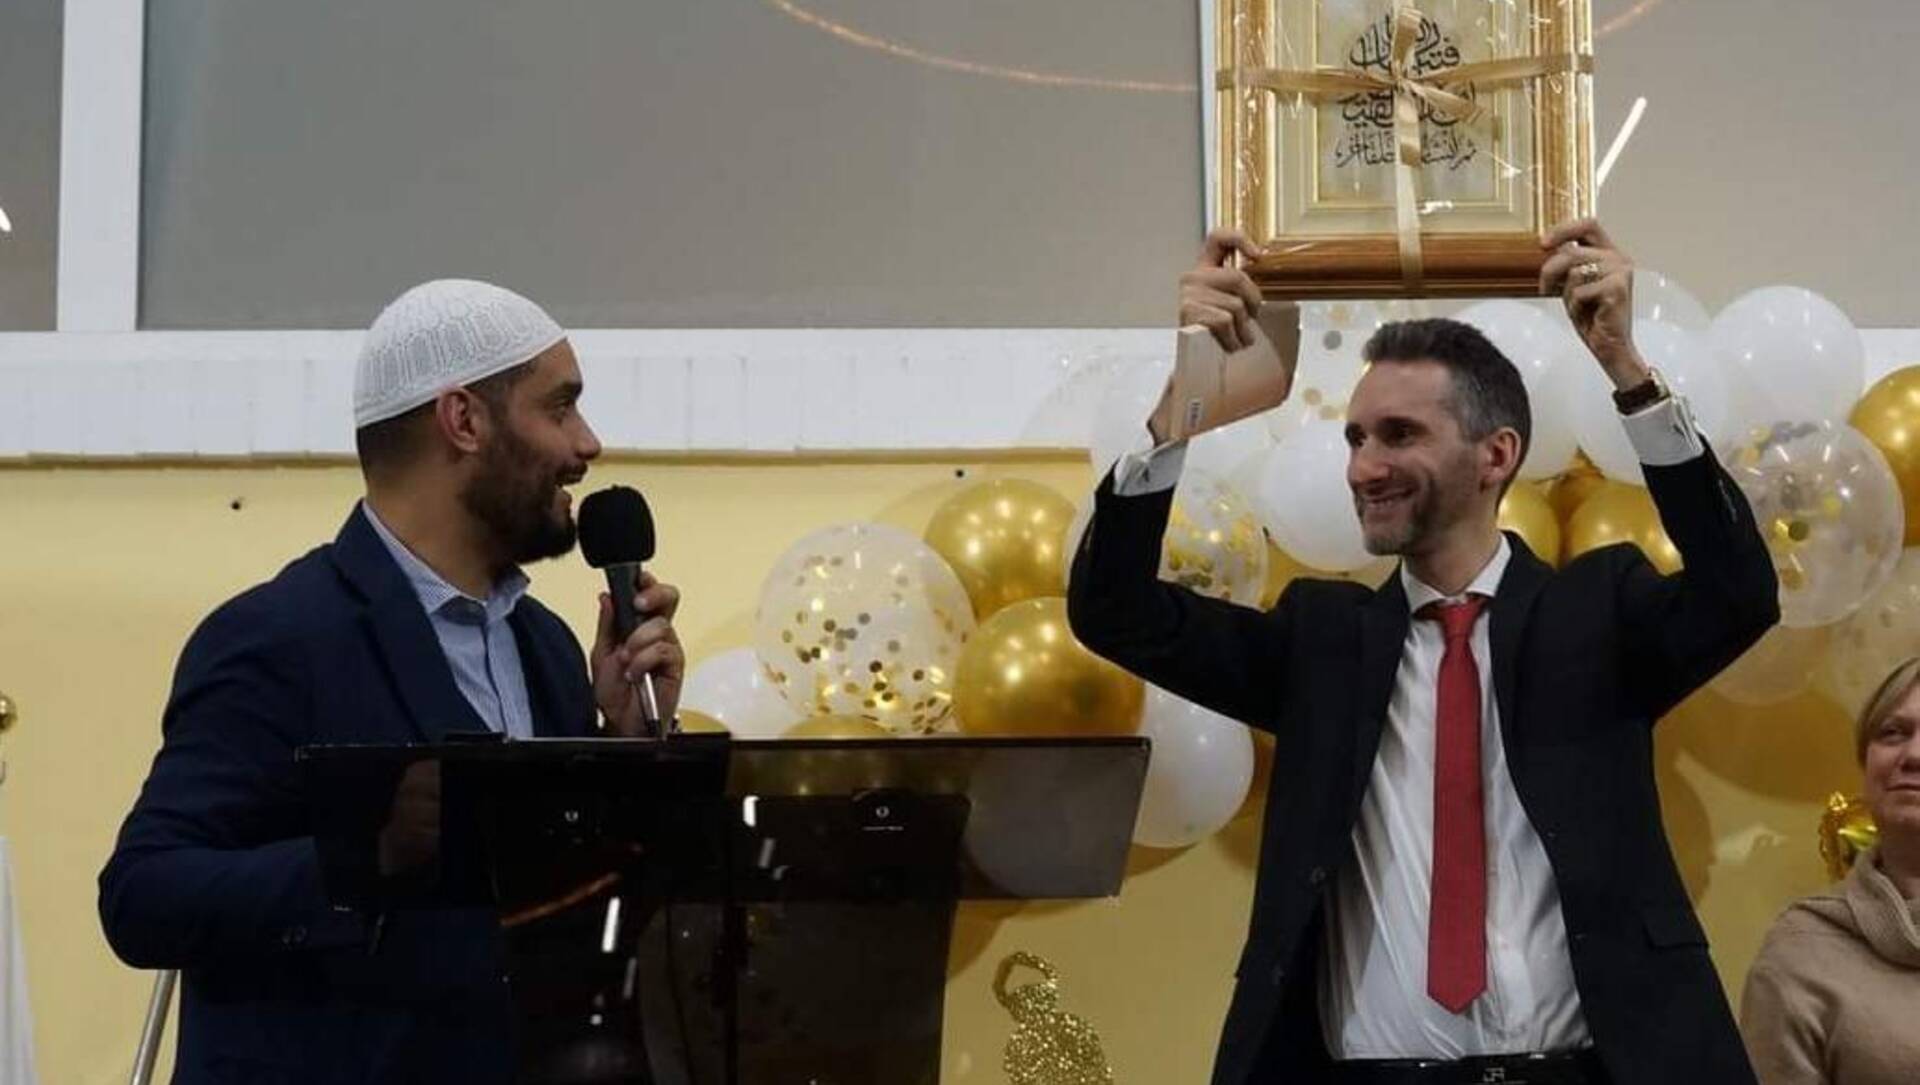 Saronno, Centro islamico premia Raffaele Di Francisca per la collaborazione con la comunità cristiana